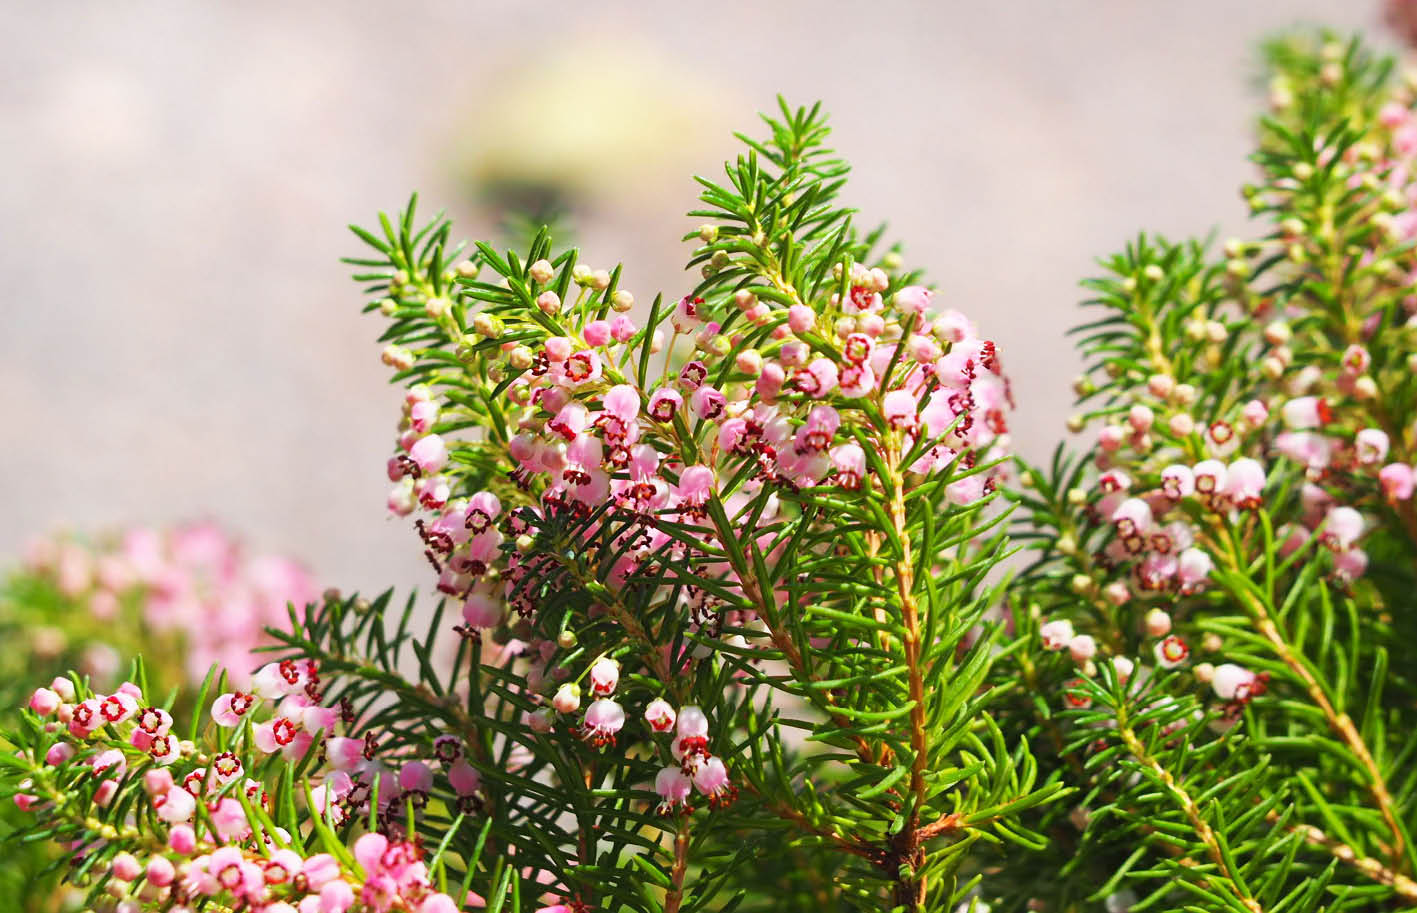 Les Bruyeres Erica sont de jolies plantes aux fleurs en forme de clochettes 